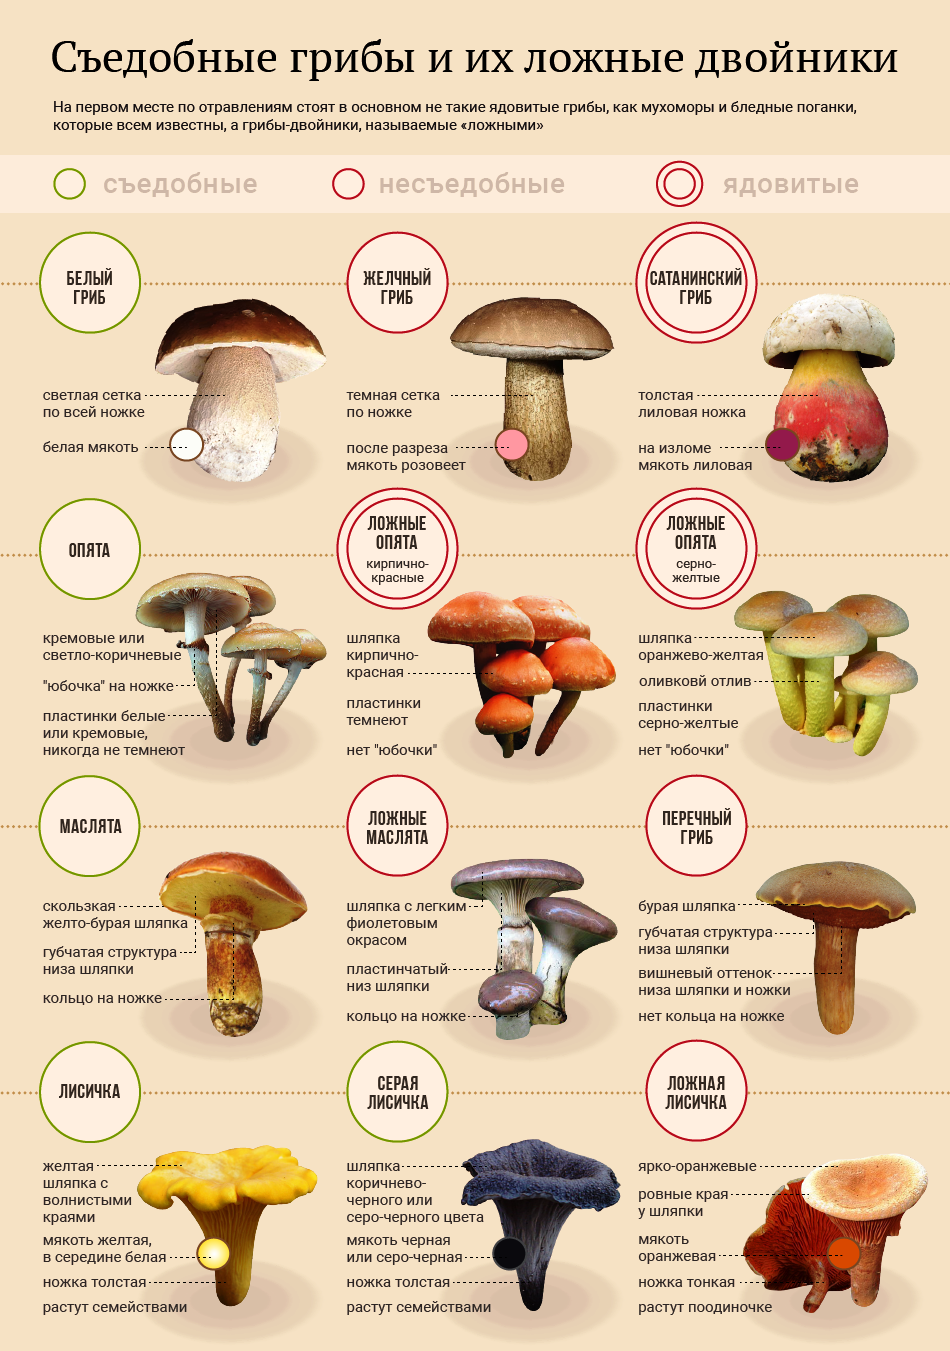 Отравление грибами симптомы, лечение, профилактика